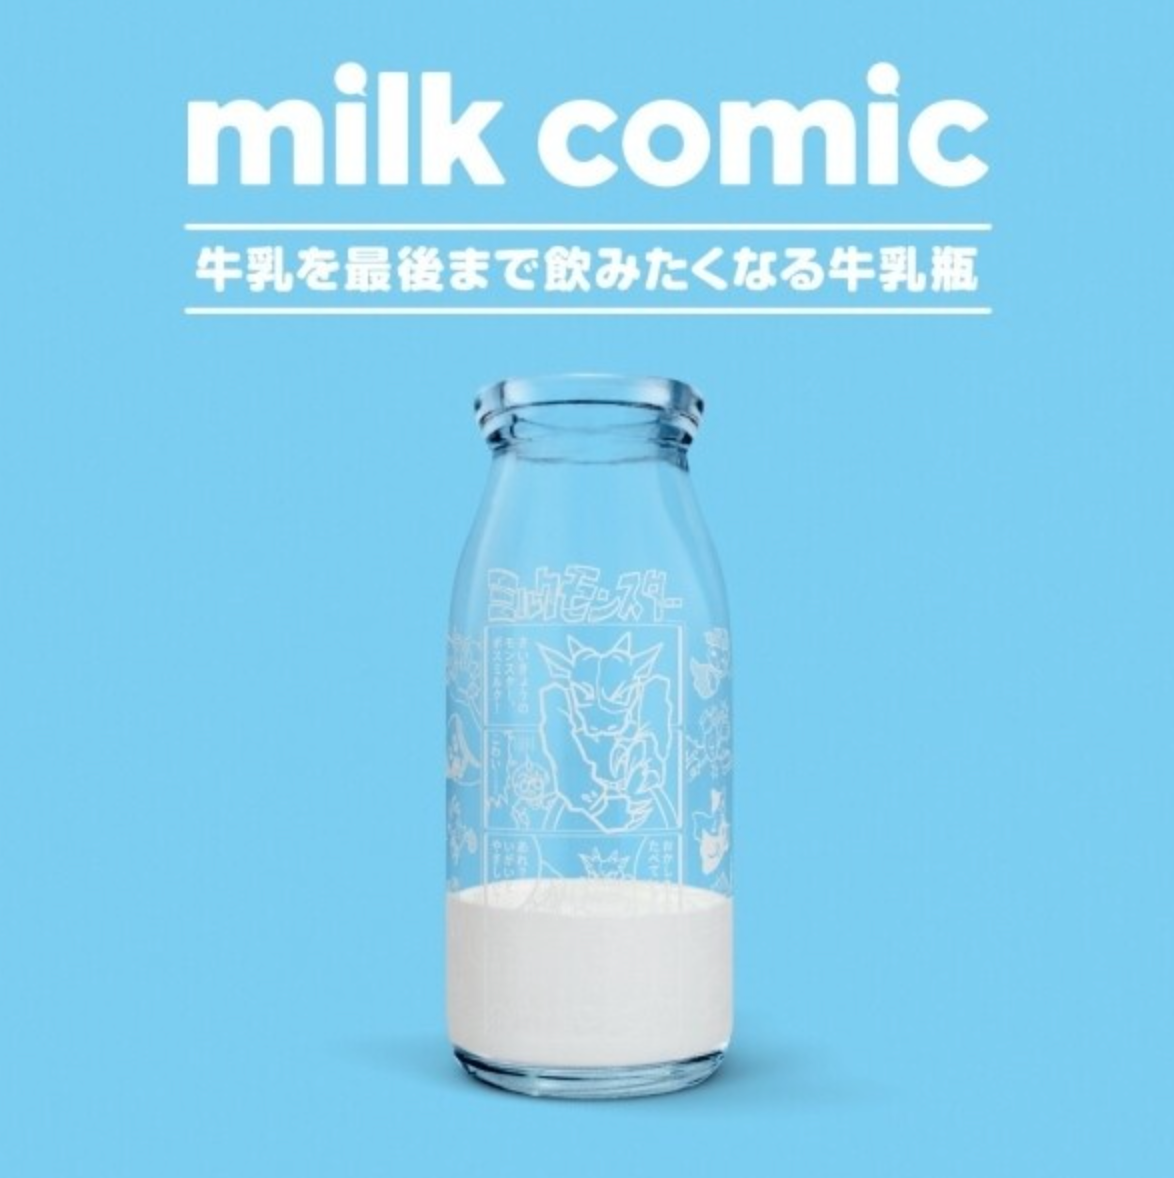 일본에서 우유 소비율을 늘린 방법